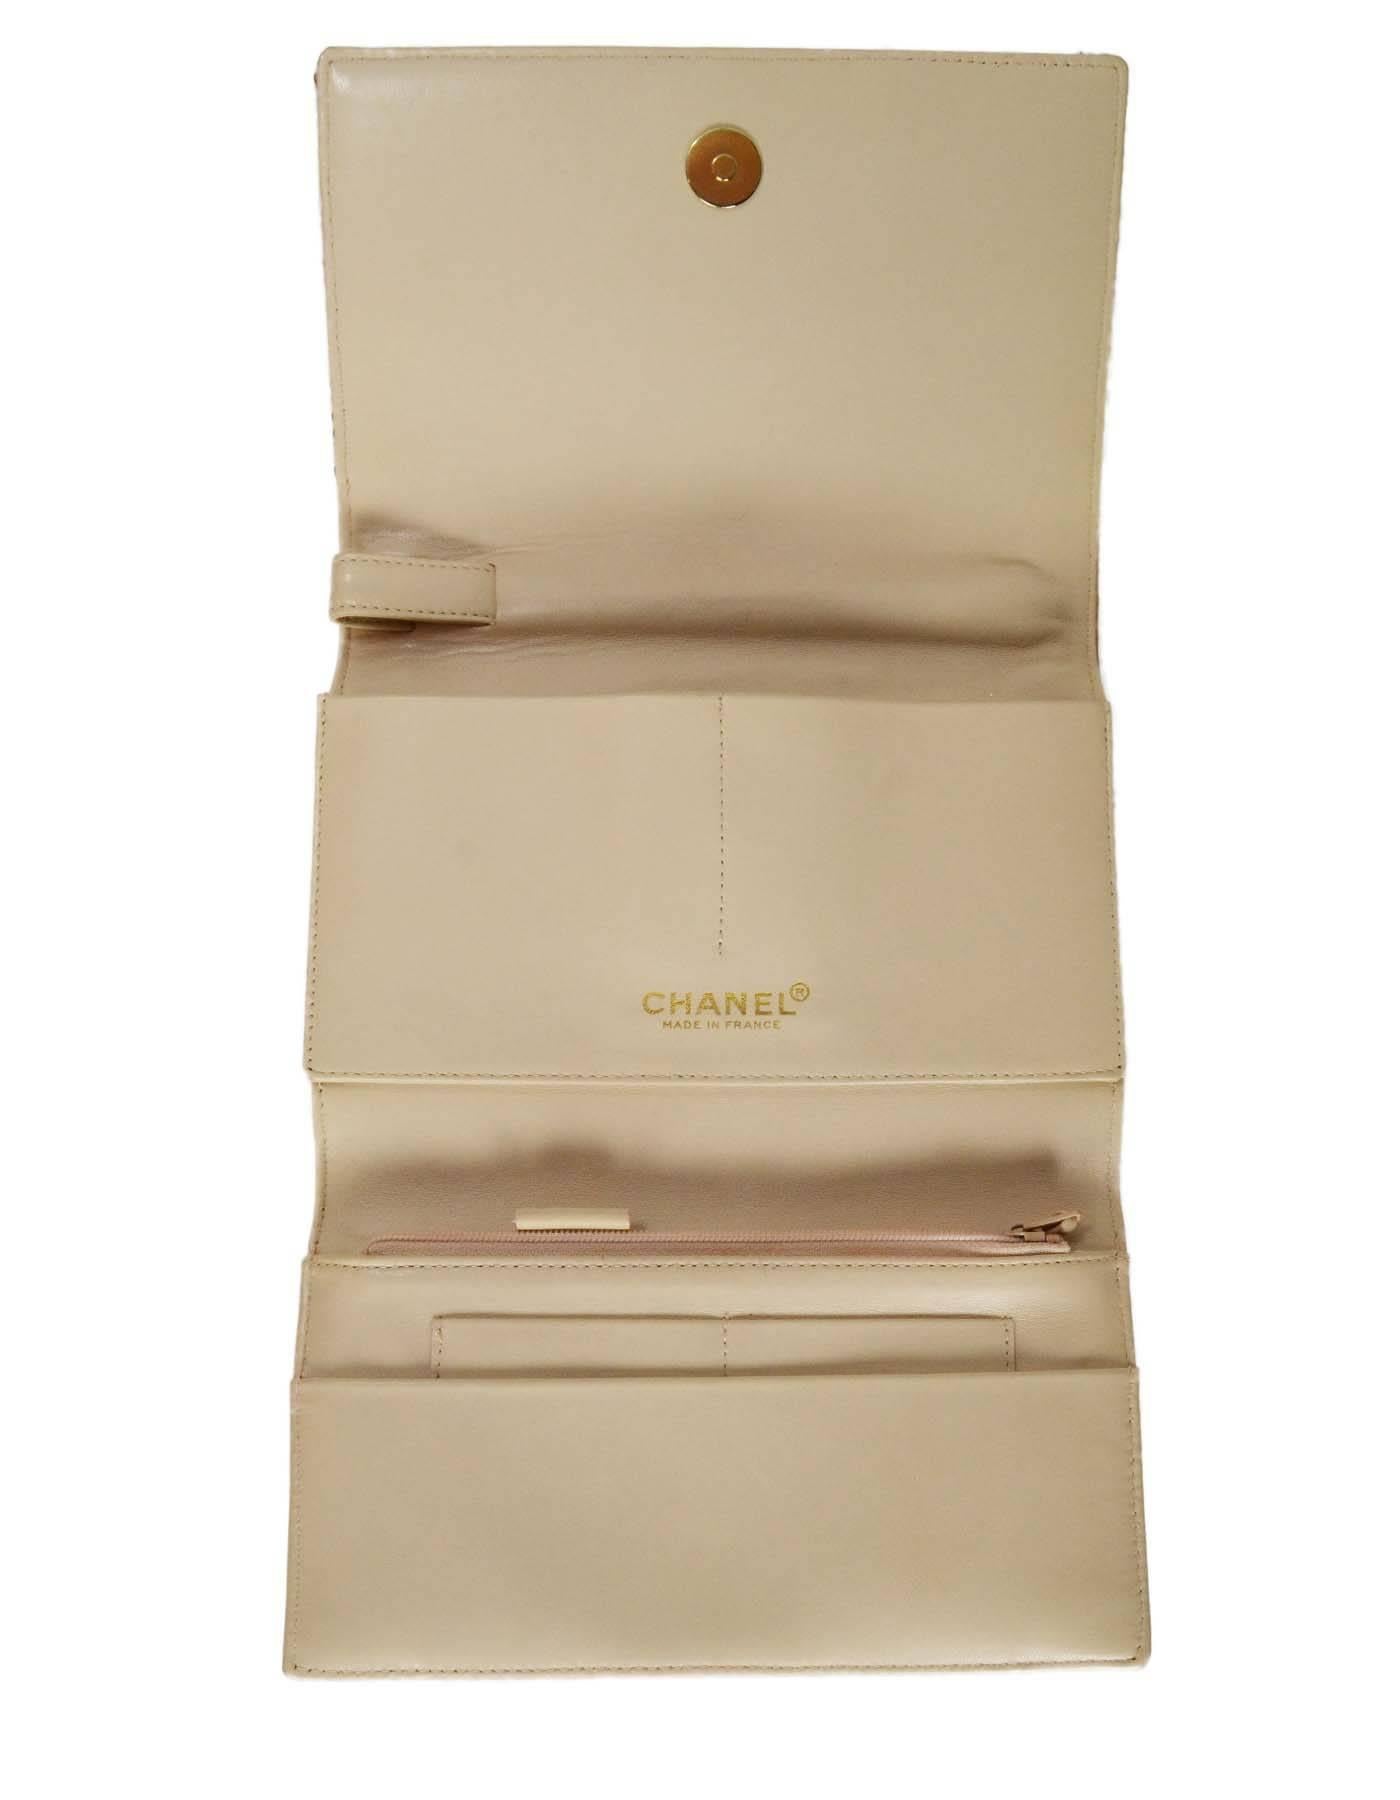 Chanel Metallic Peach Tweed Wristlet Clutch Bag GHW 2